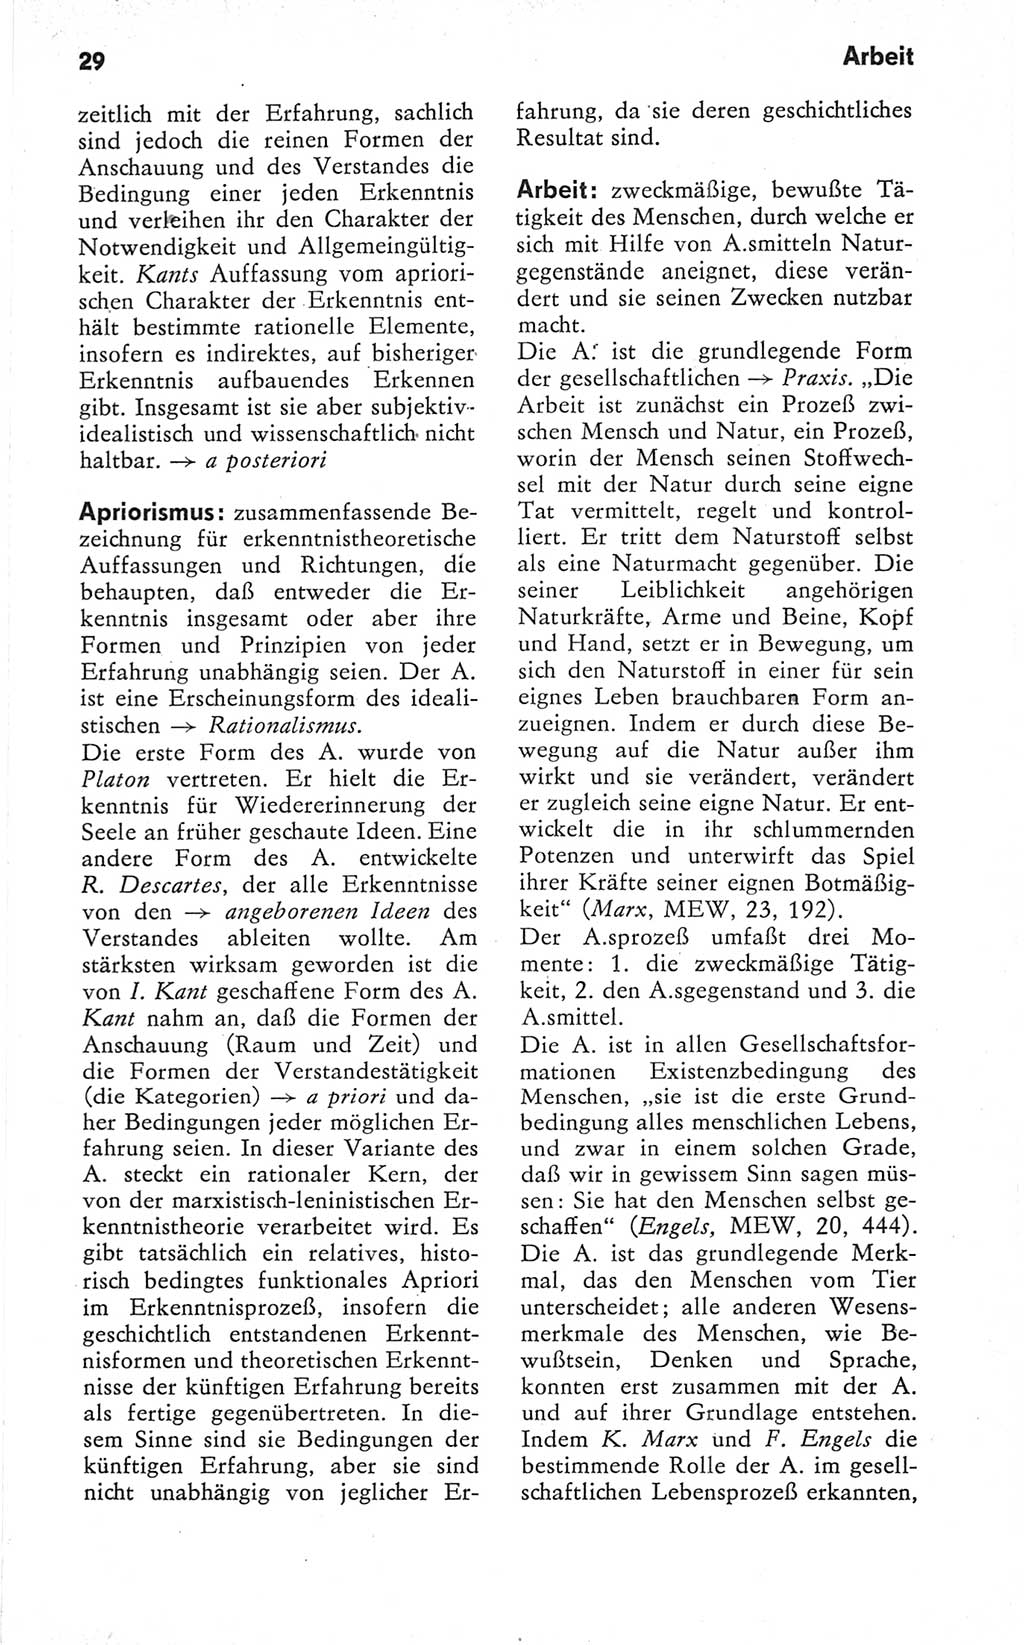 Kleines Wörterbuch der marxistisch-leninistischen Philosophie [Deutsche Demokratische Republik (DDR)] 1979, Seite 29 (Kl. Wb. ML Phil. DDR 1979, S. 29)